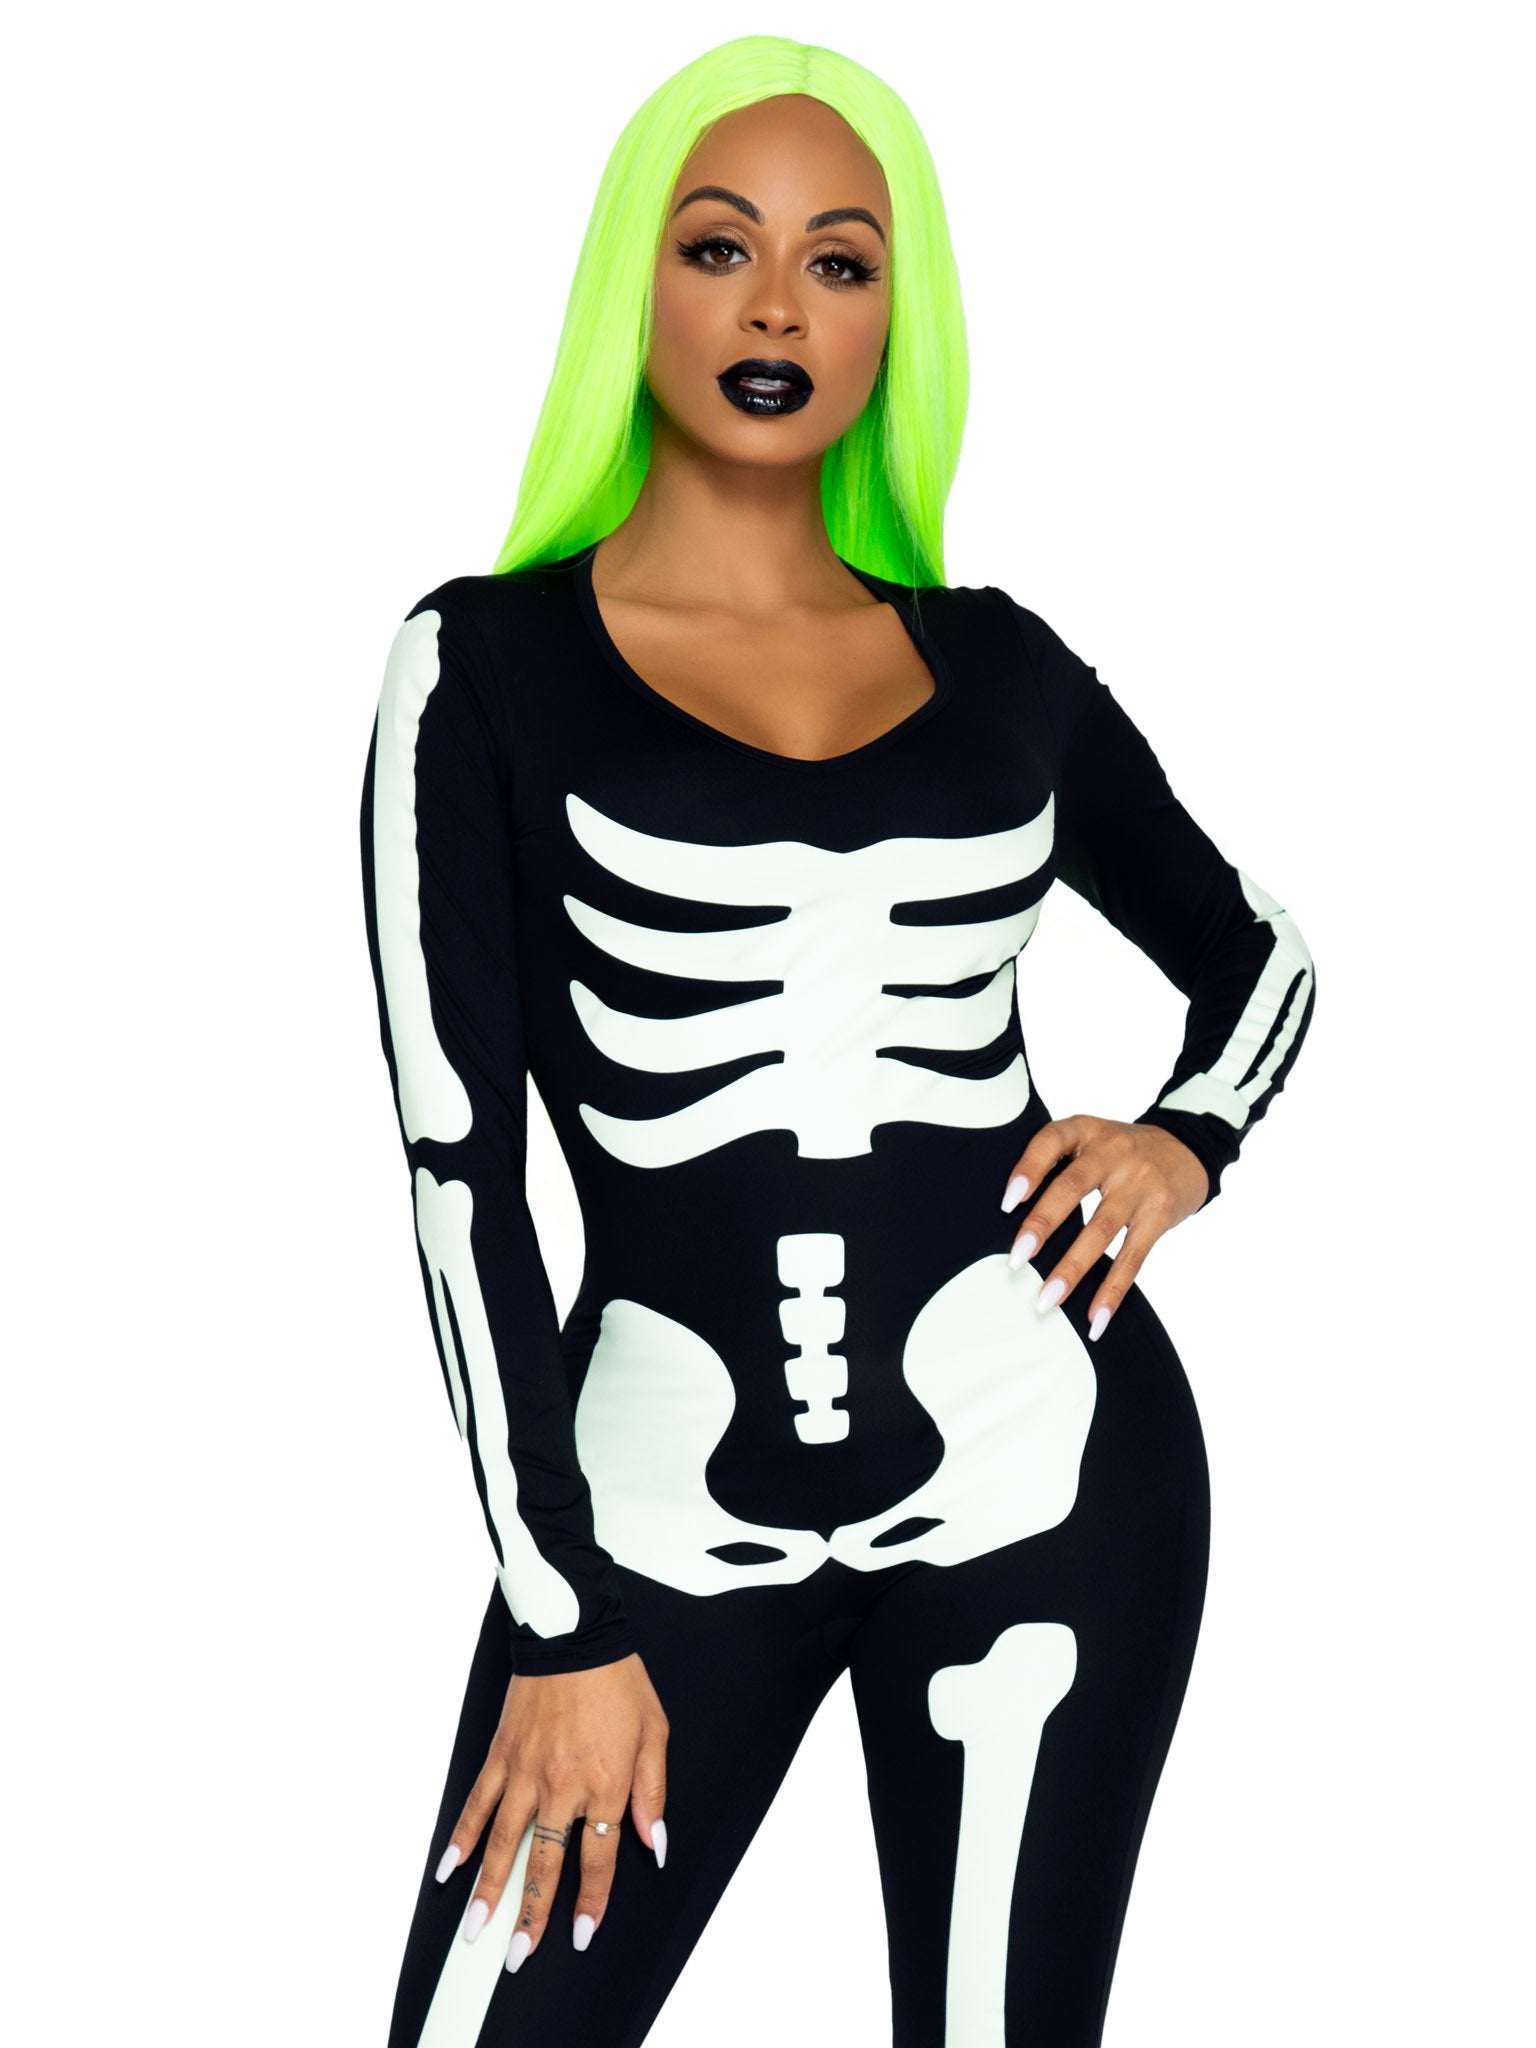 American Apparel Skeleton Glow in The Dark Halloween Leggings in